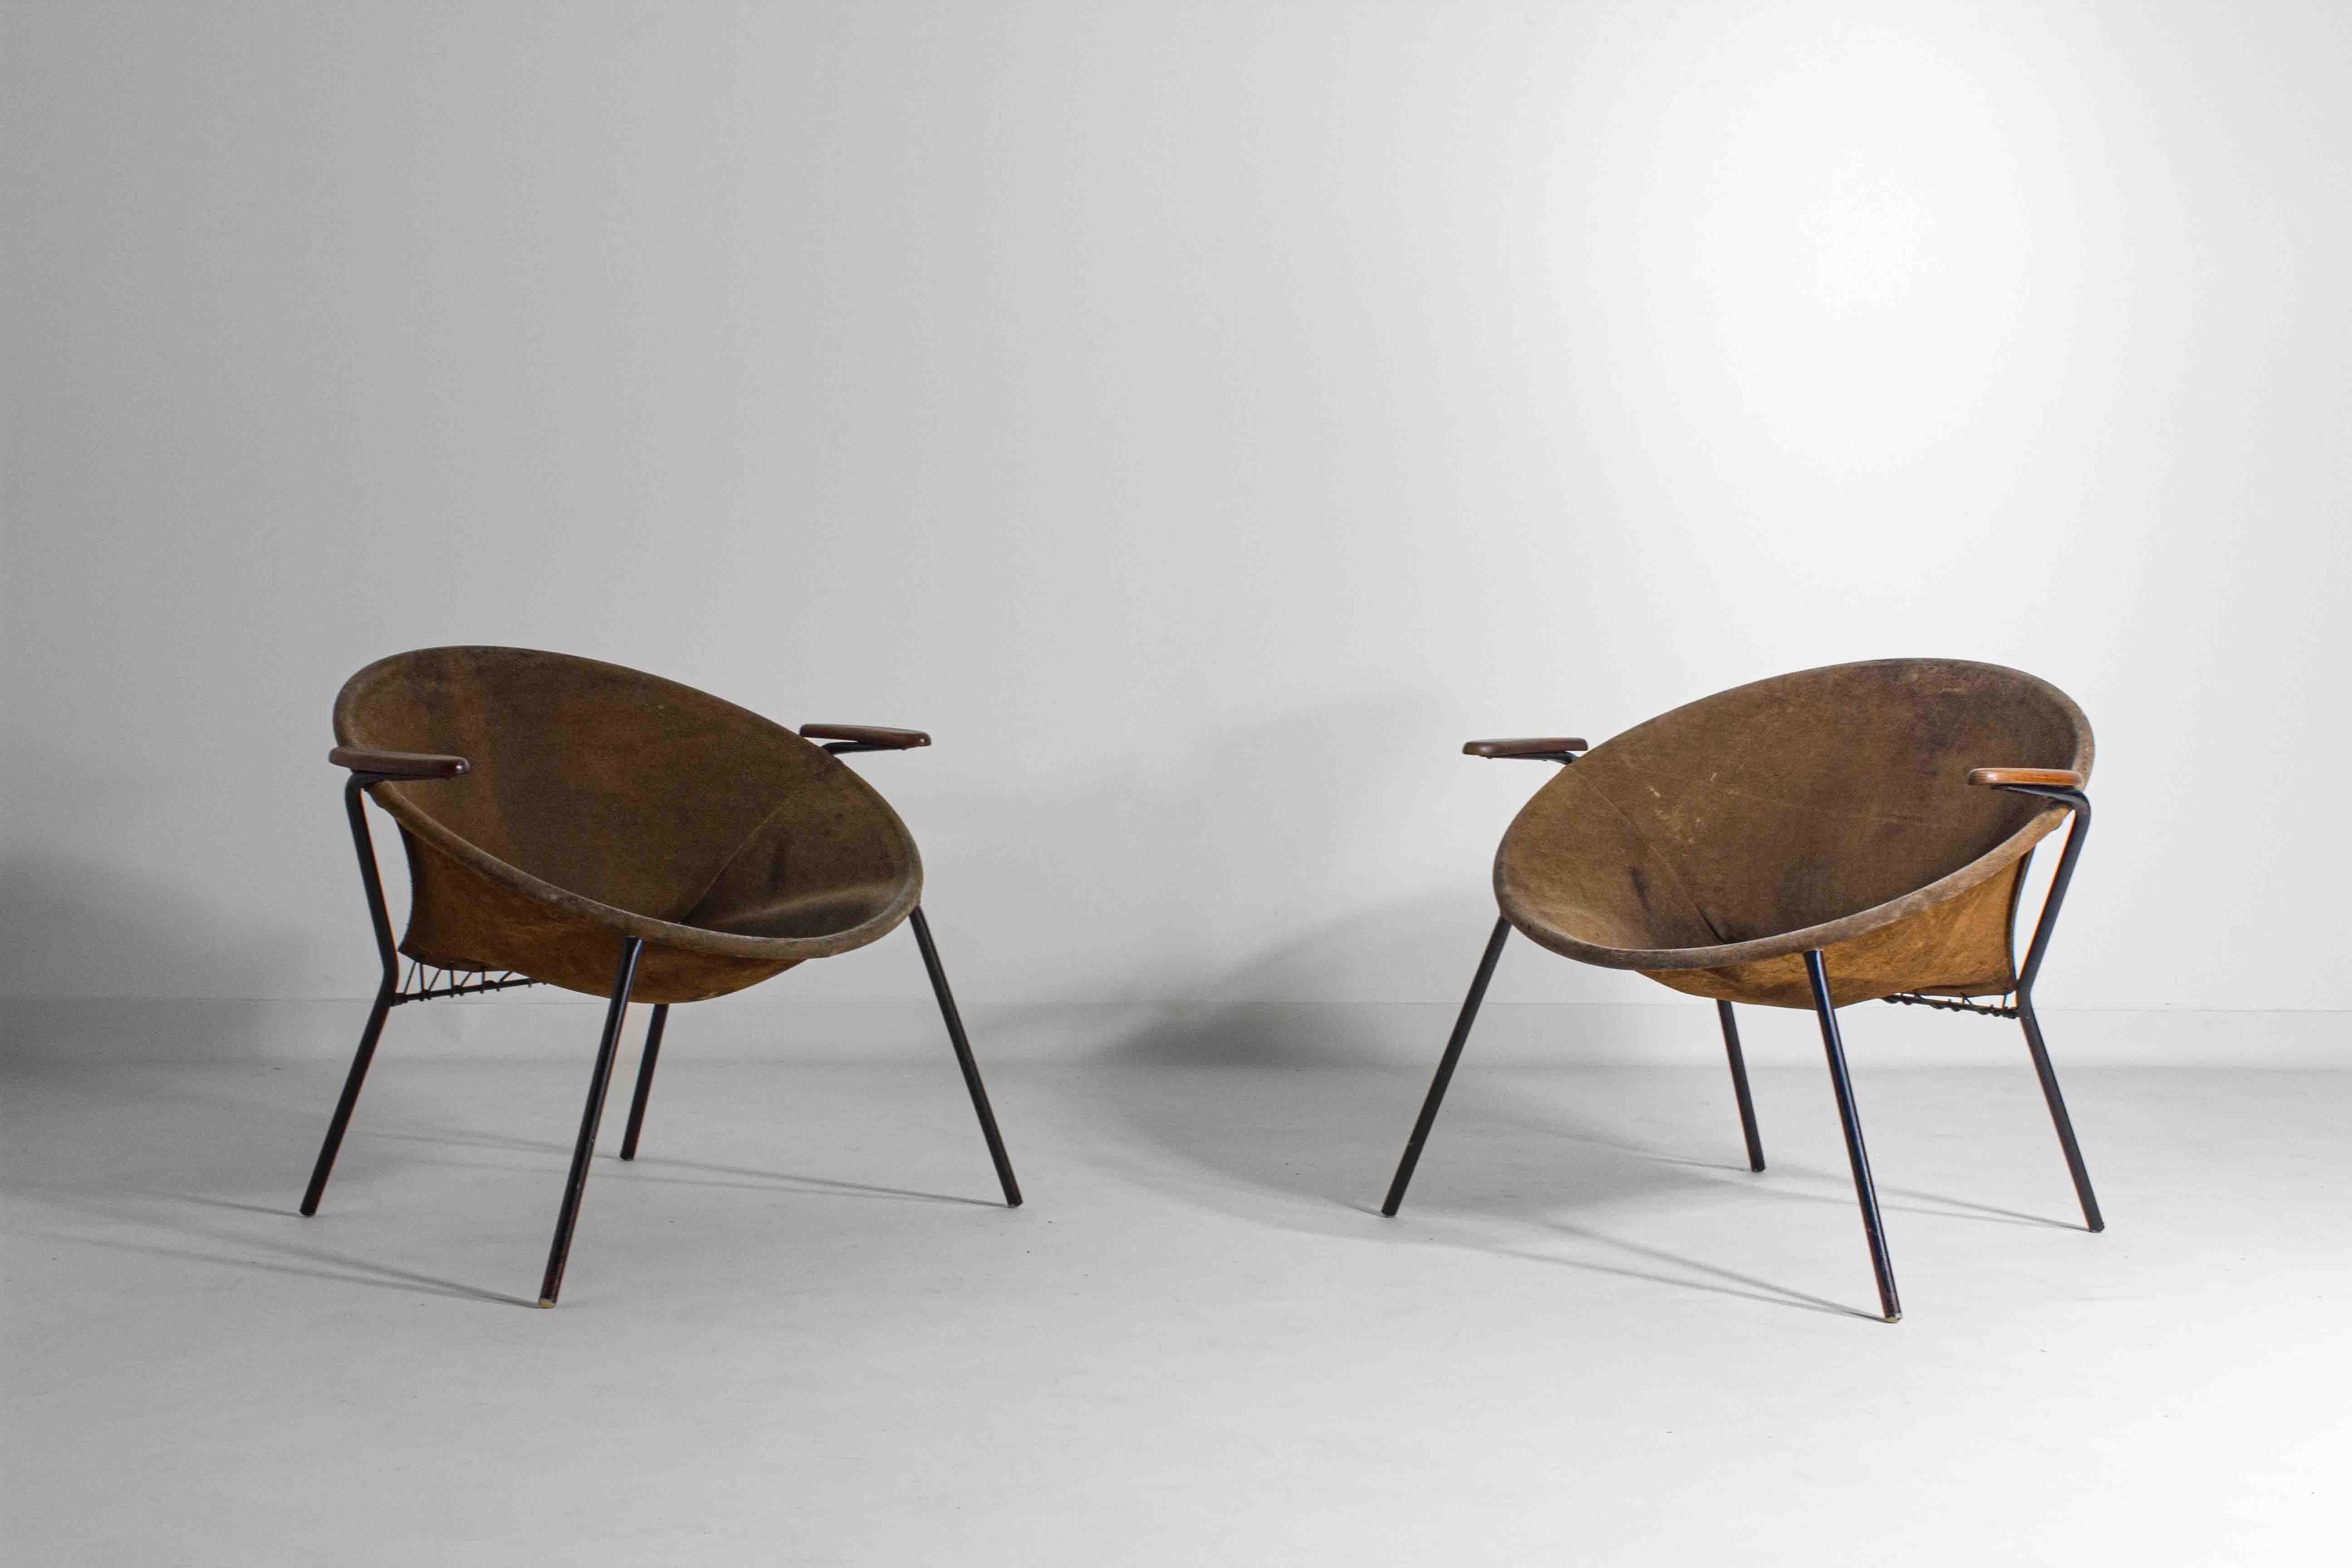 Très bel ensemble de deux chaises Balloon originales de Hans Olsen en cuir magnifiquement patiné.

